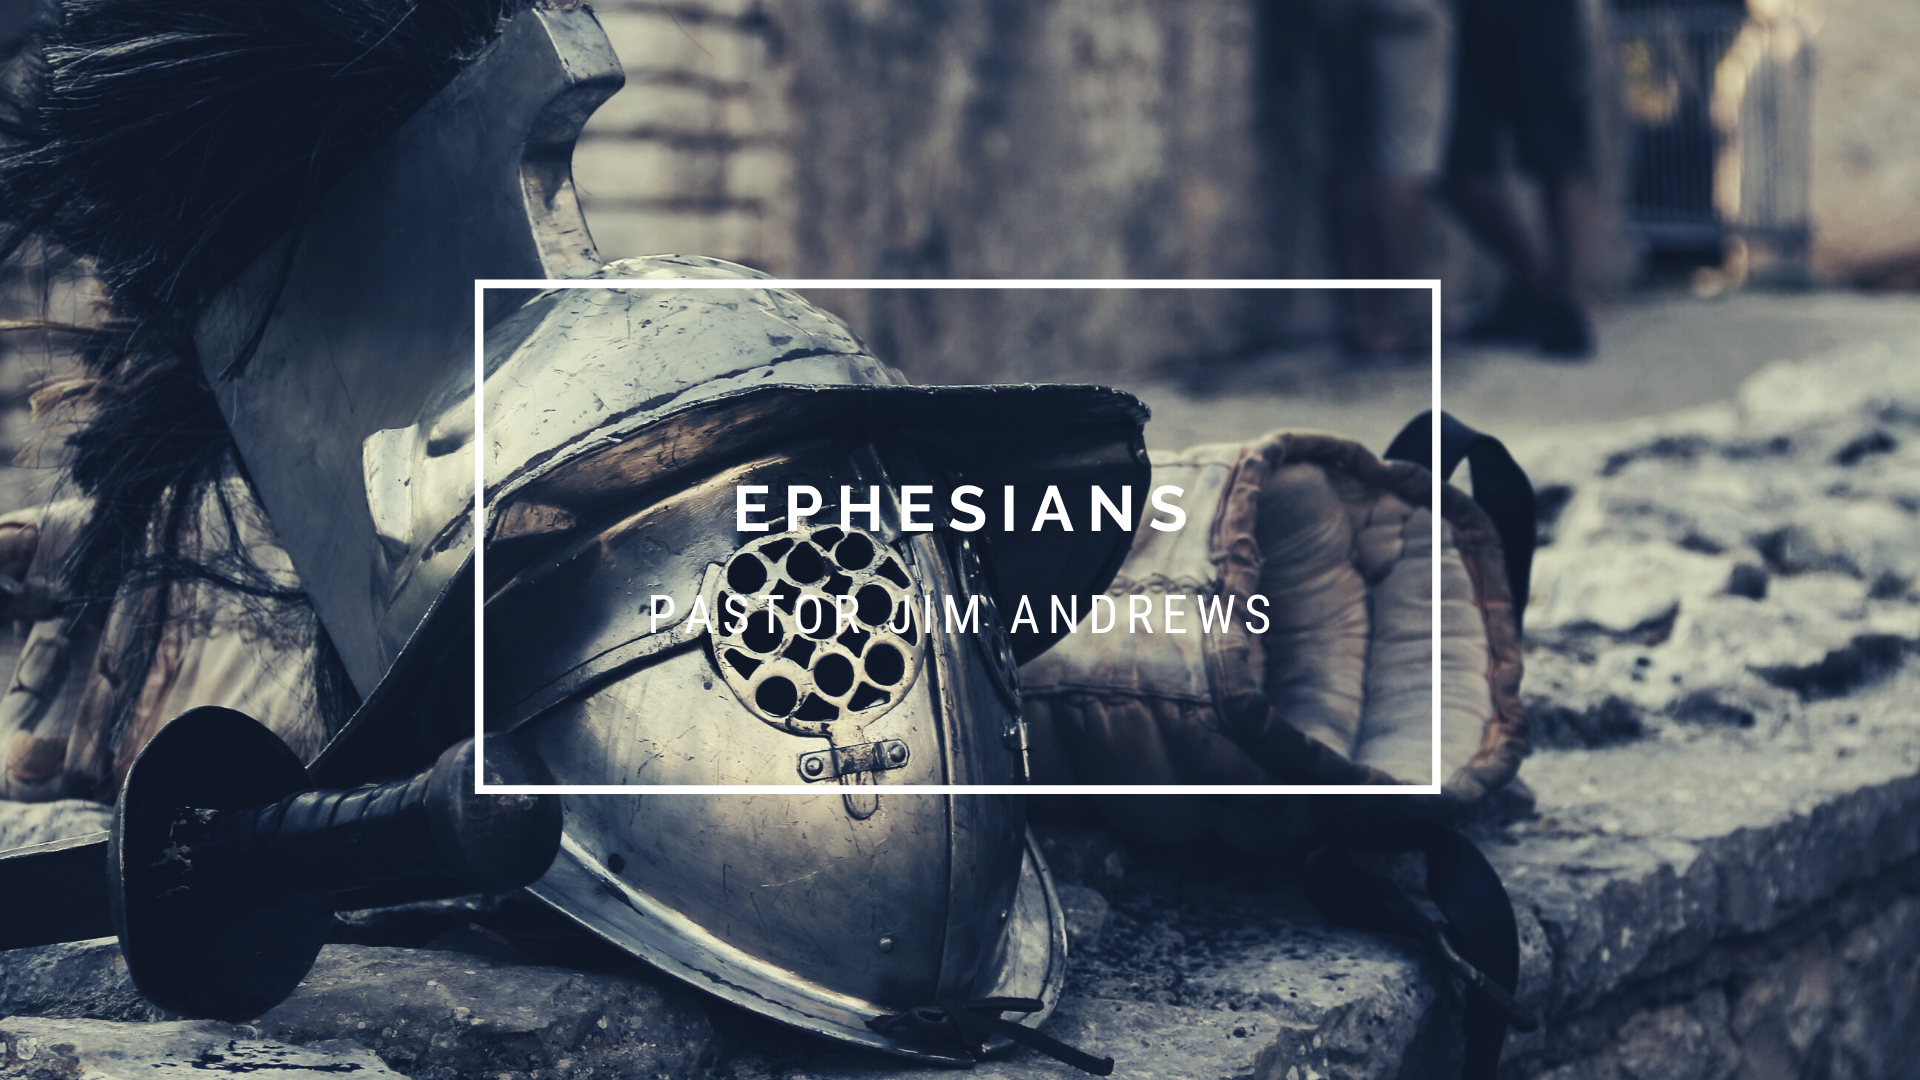 Ephesians 6:18